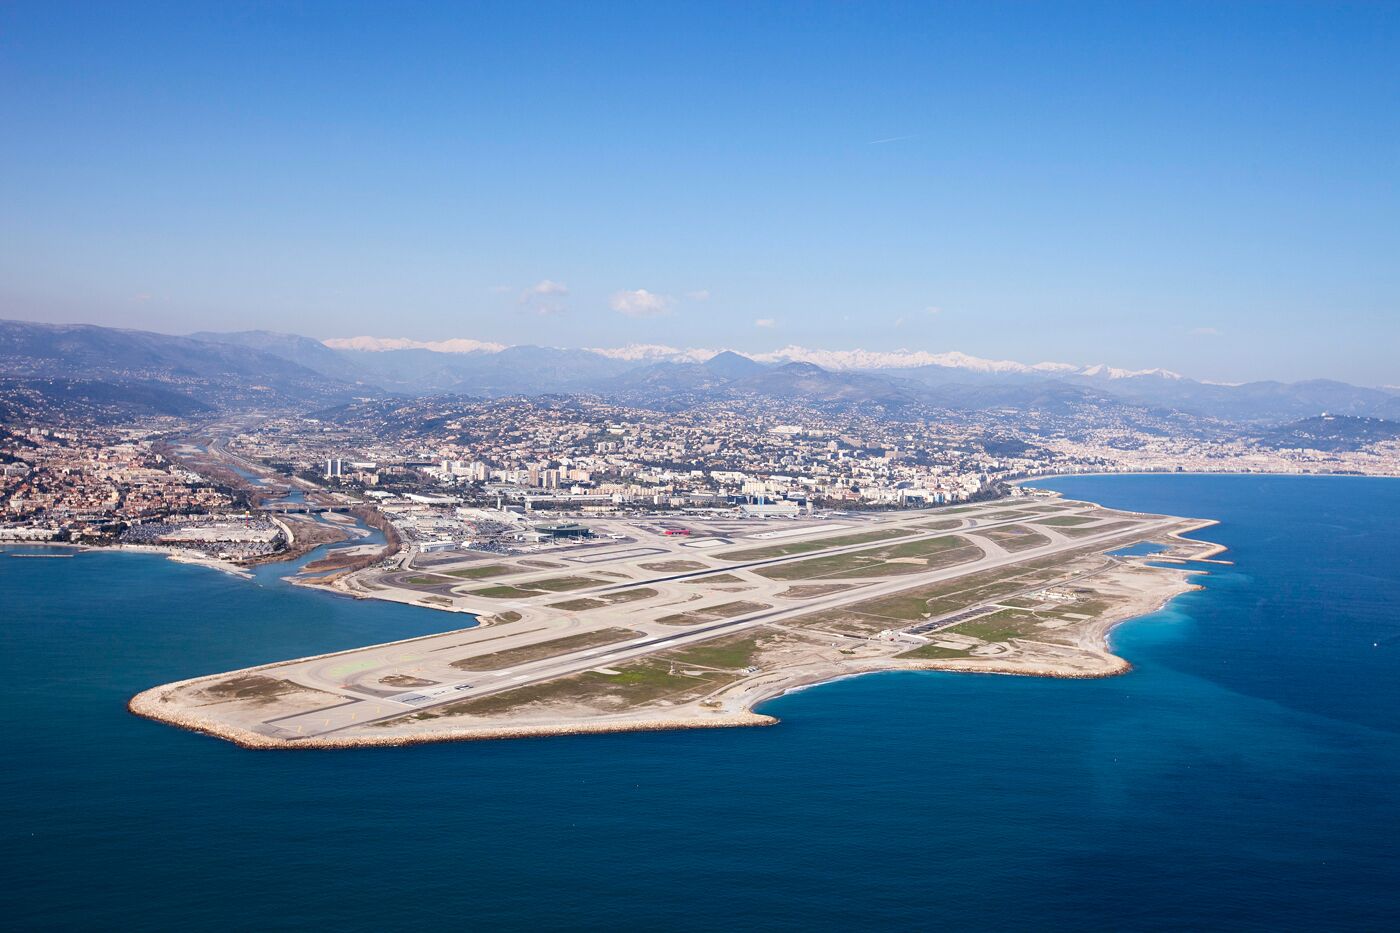 L’aéroport de Nice vise zéro émission en 2050 1 Air Journal